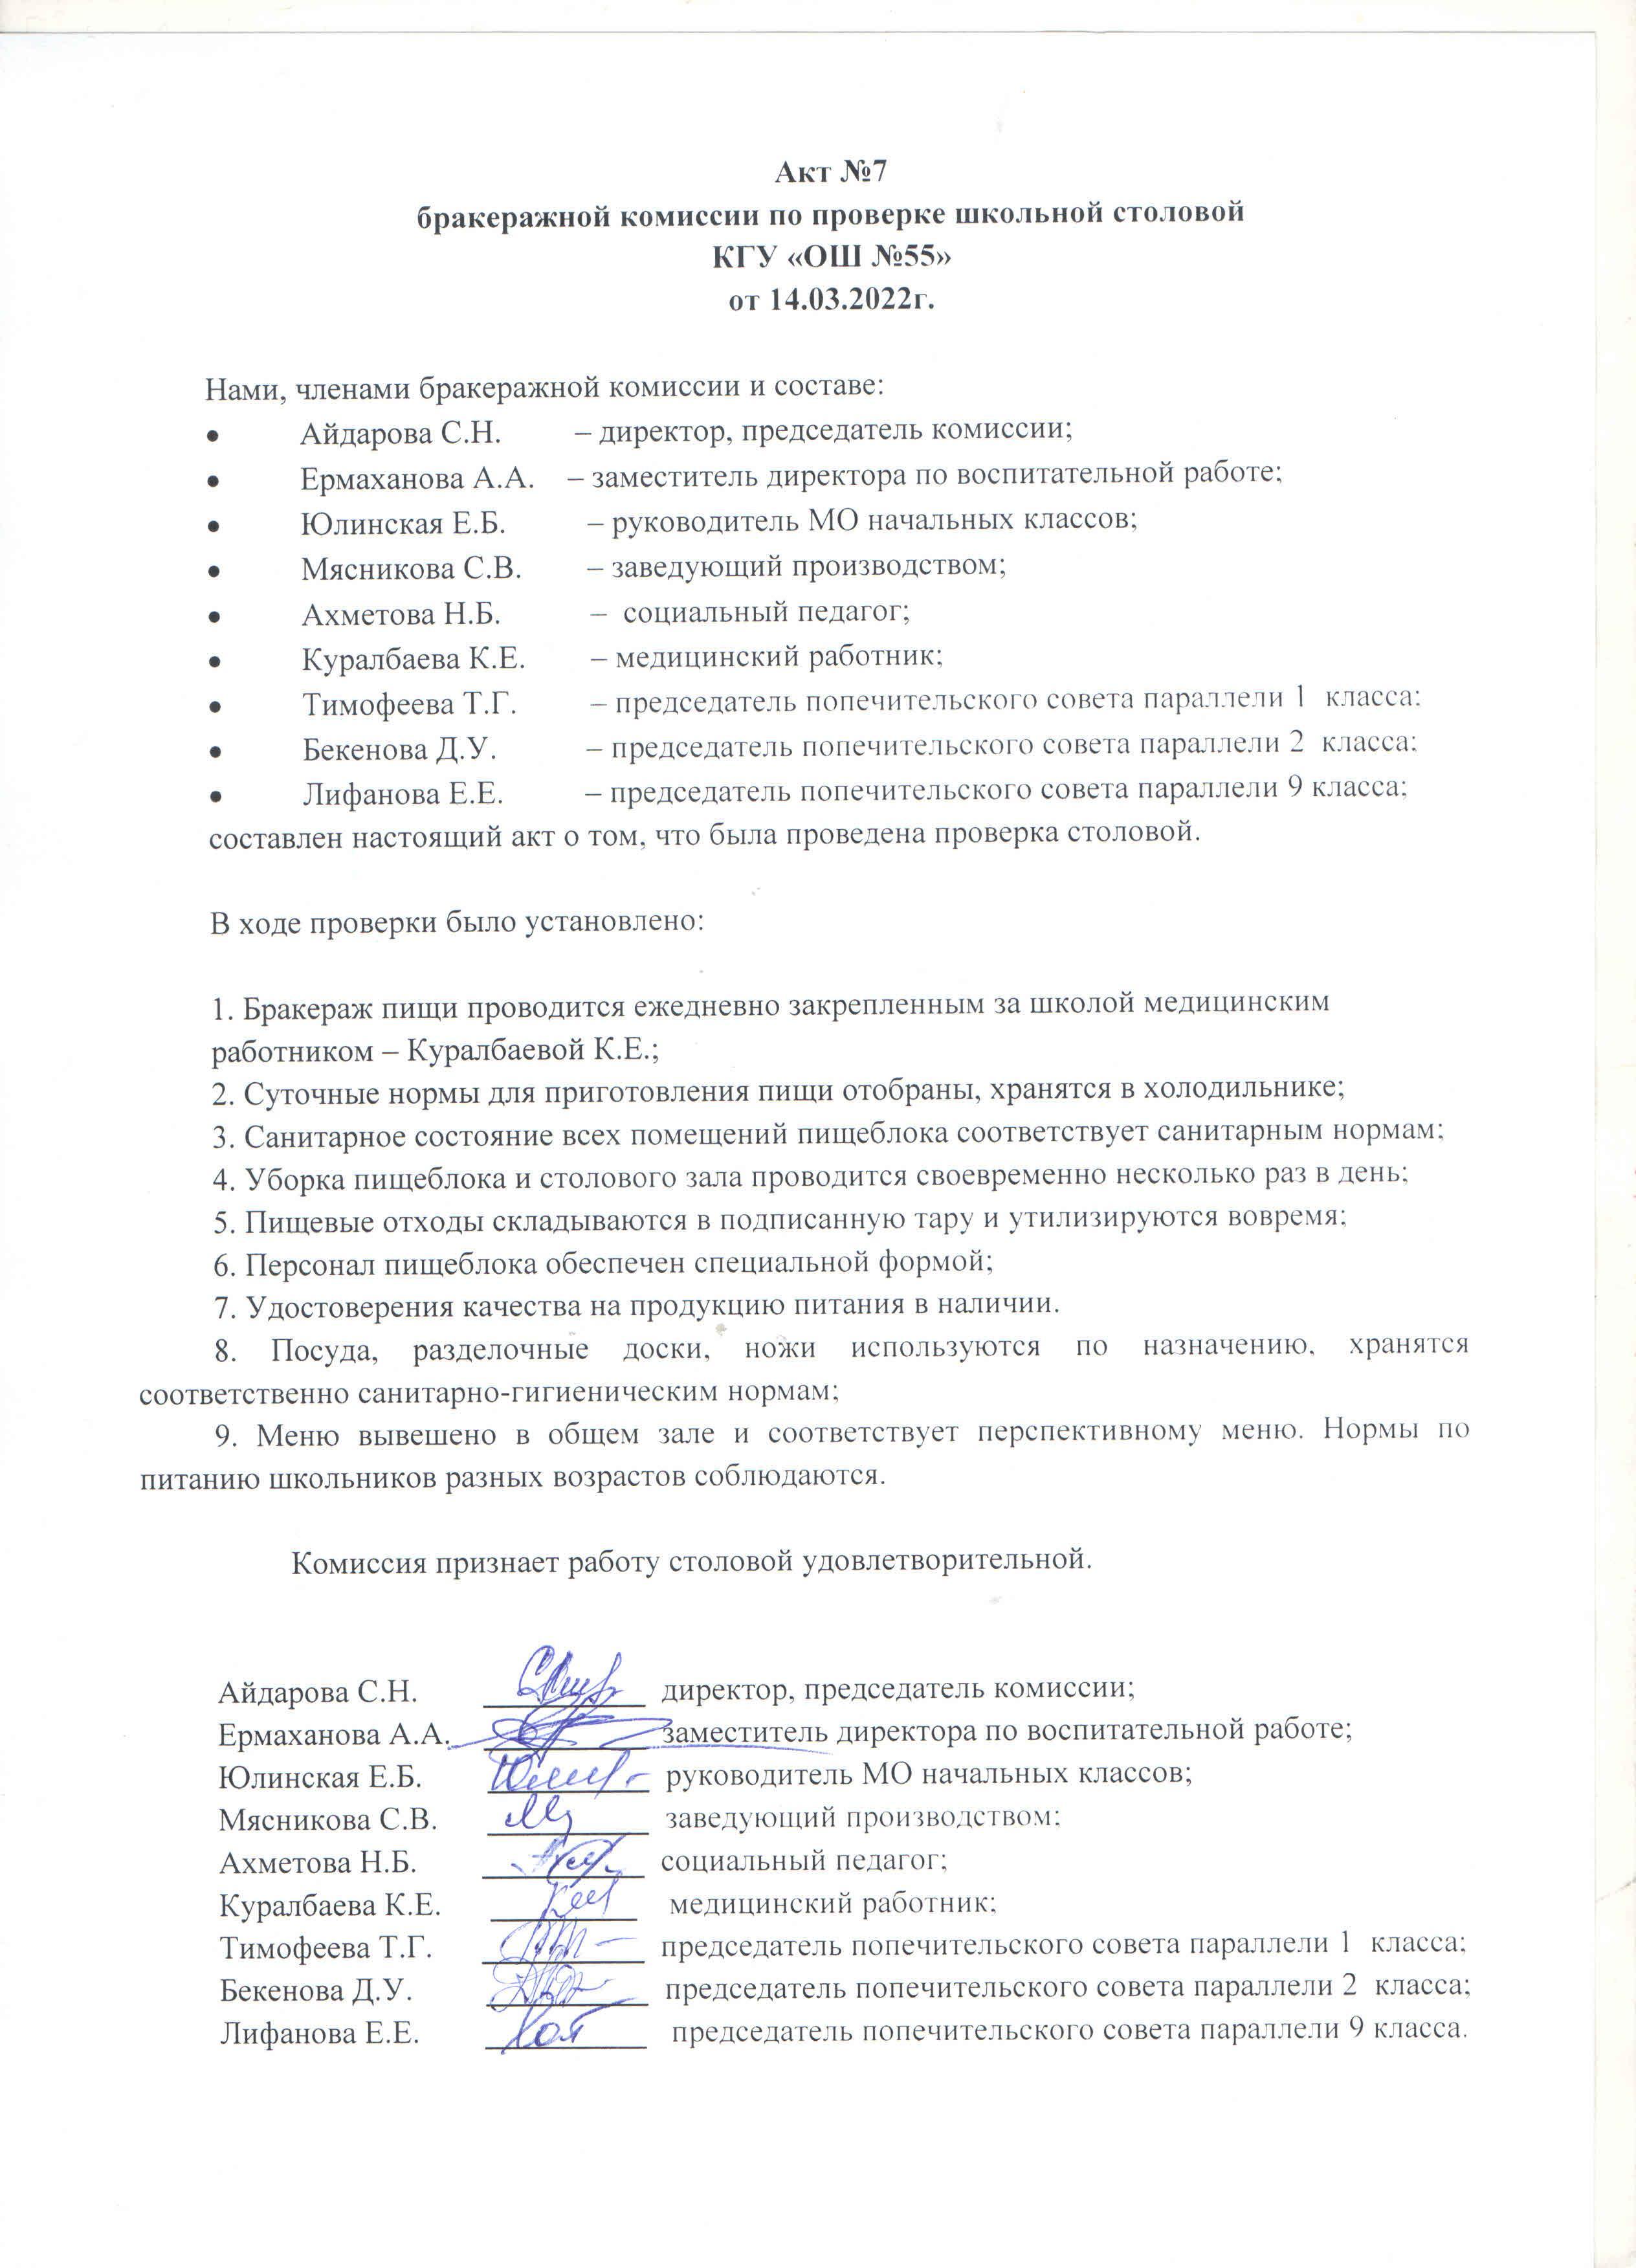 Акт №7 бракеражной комиссии по проверке школьной столовой КГУ "ОШ №55 от 14.03.2022 г.